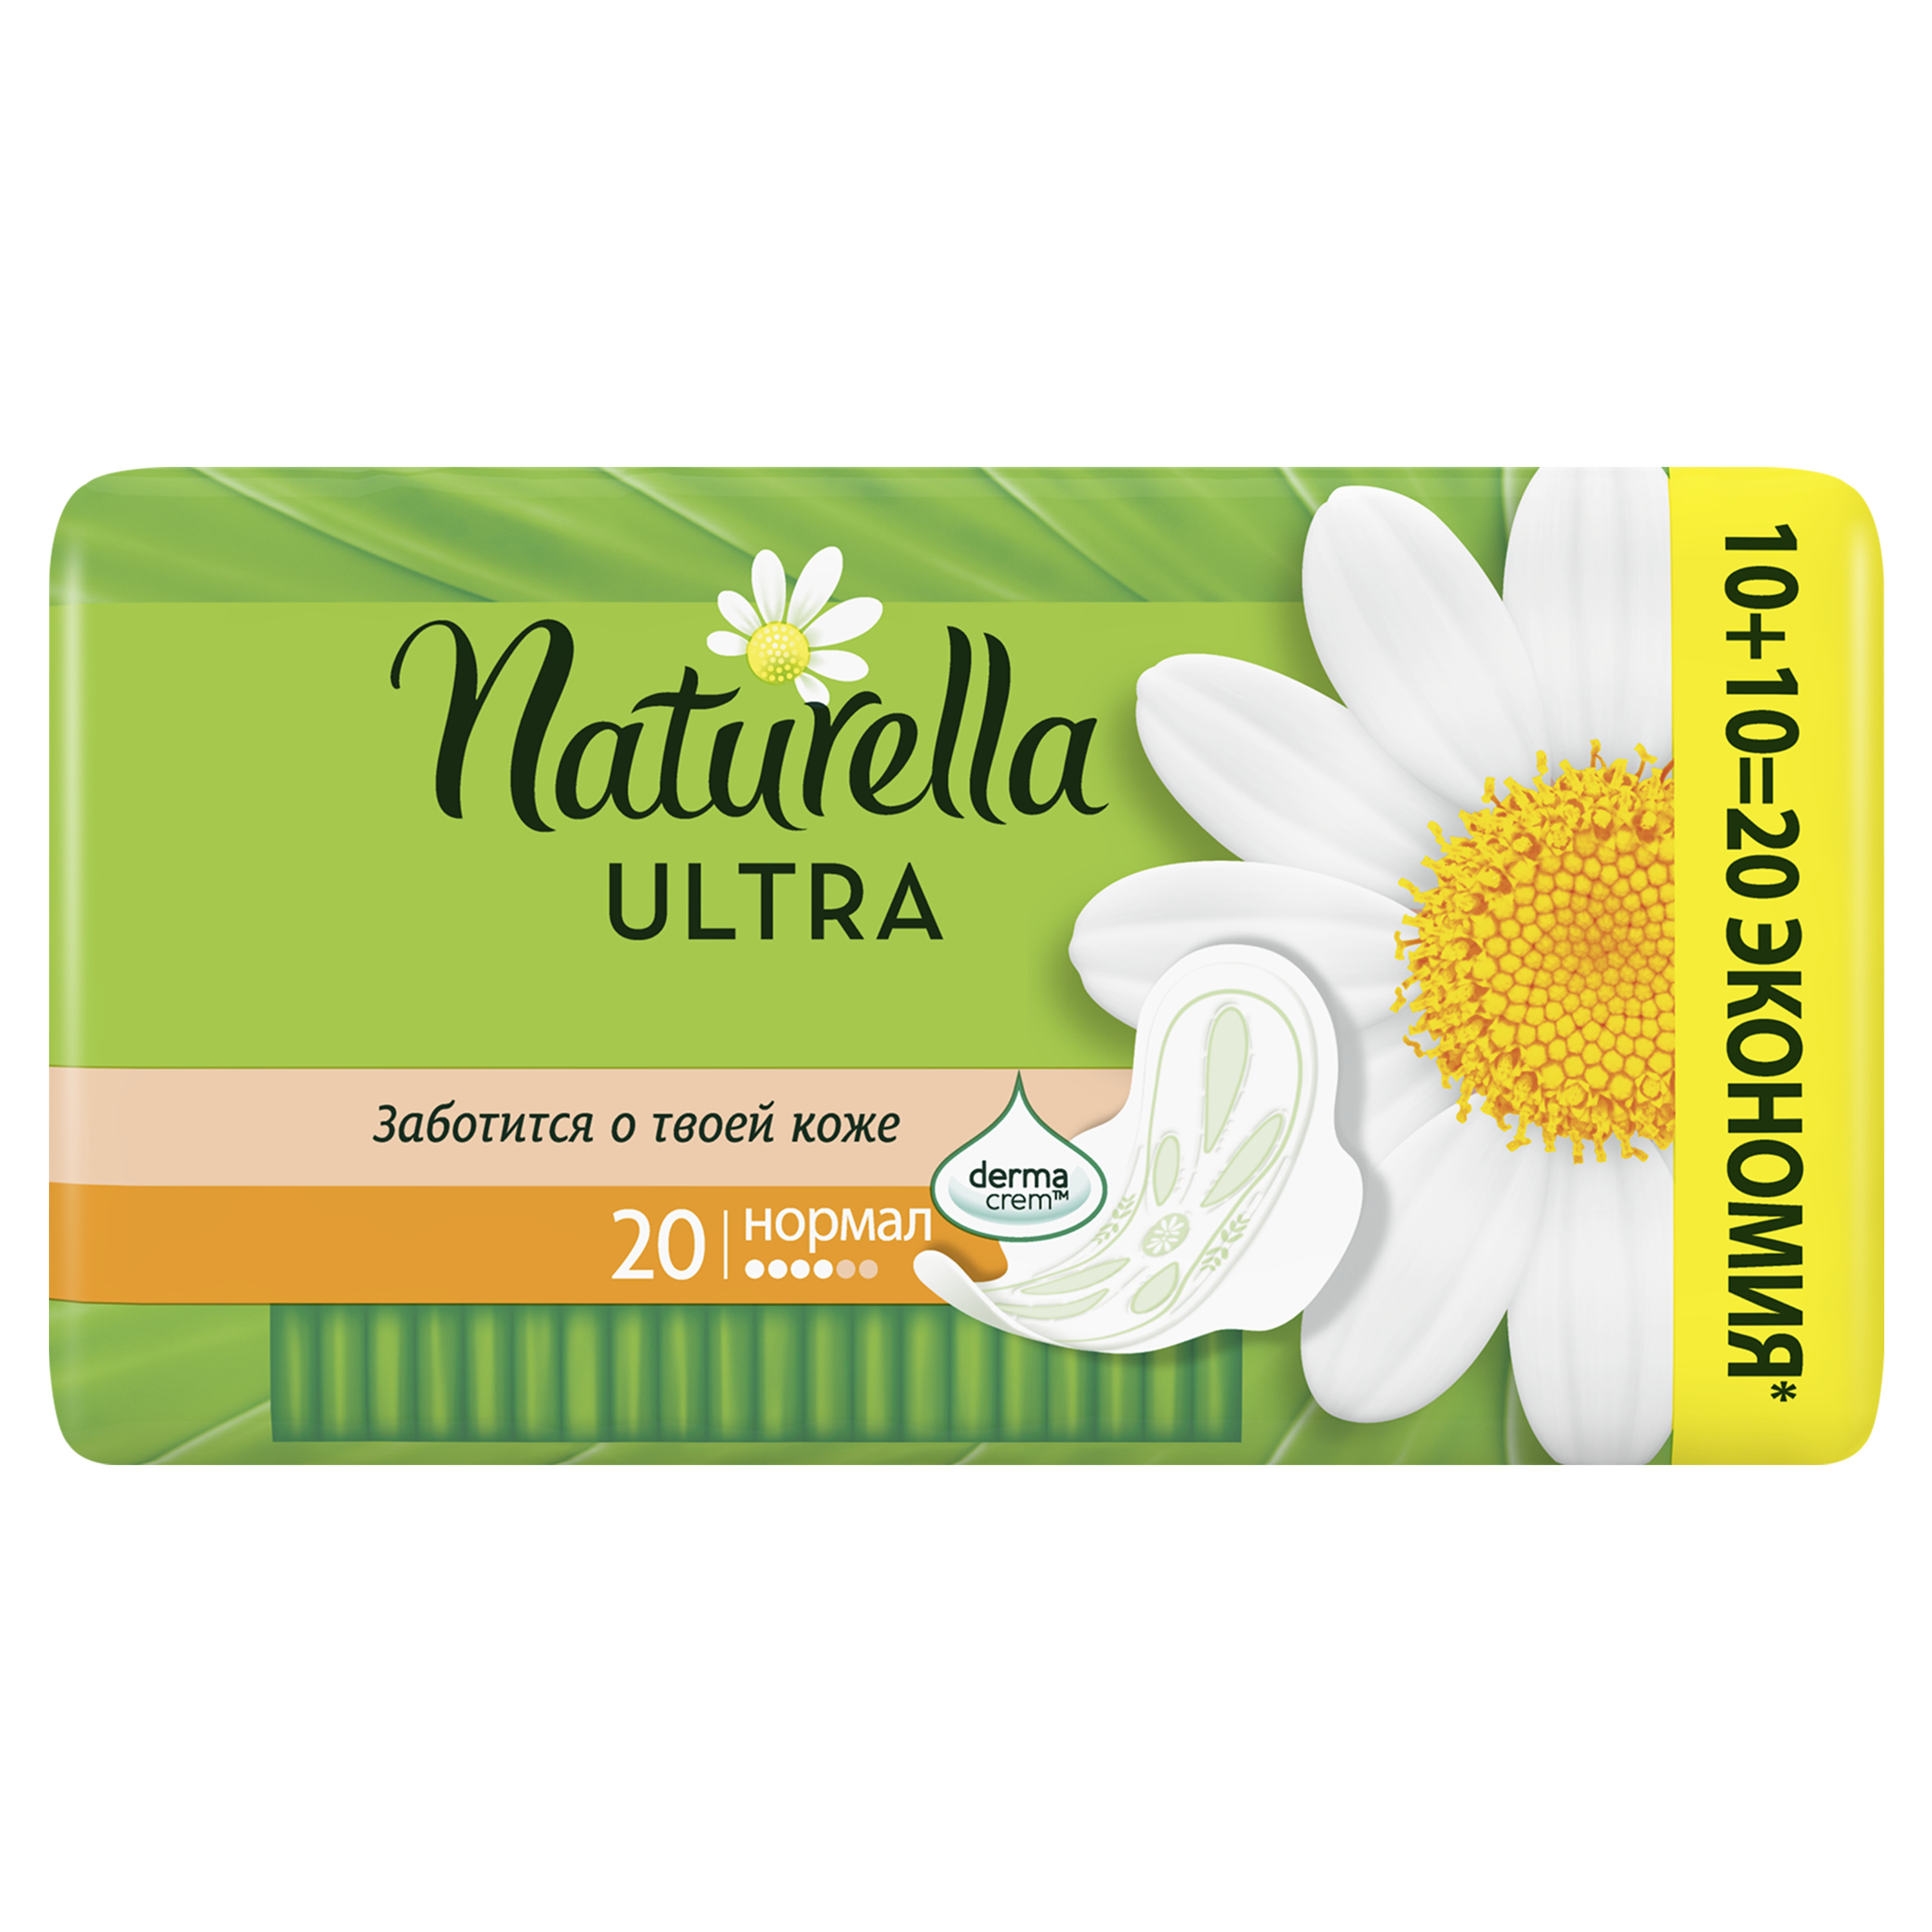 Женские ароматизированные прокладки NATURELLA ULTRA Normal (с ароматом ромашки) Duo, 20 шт.